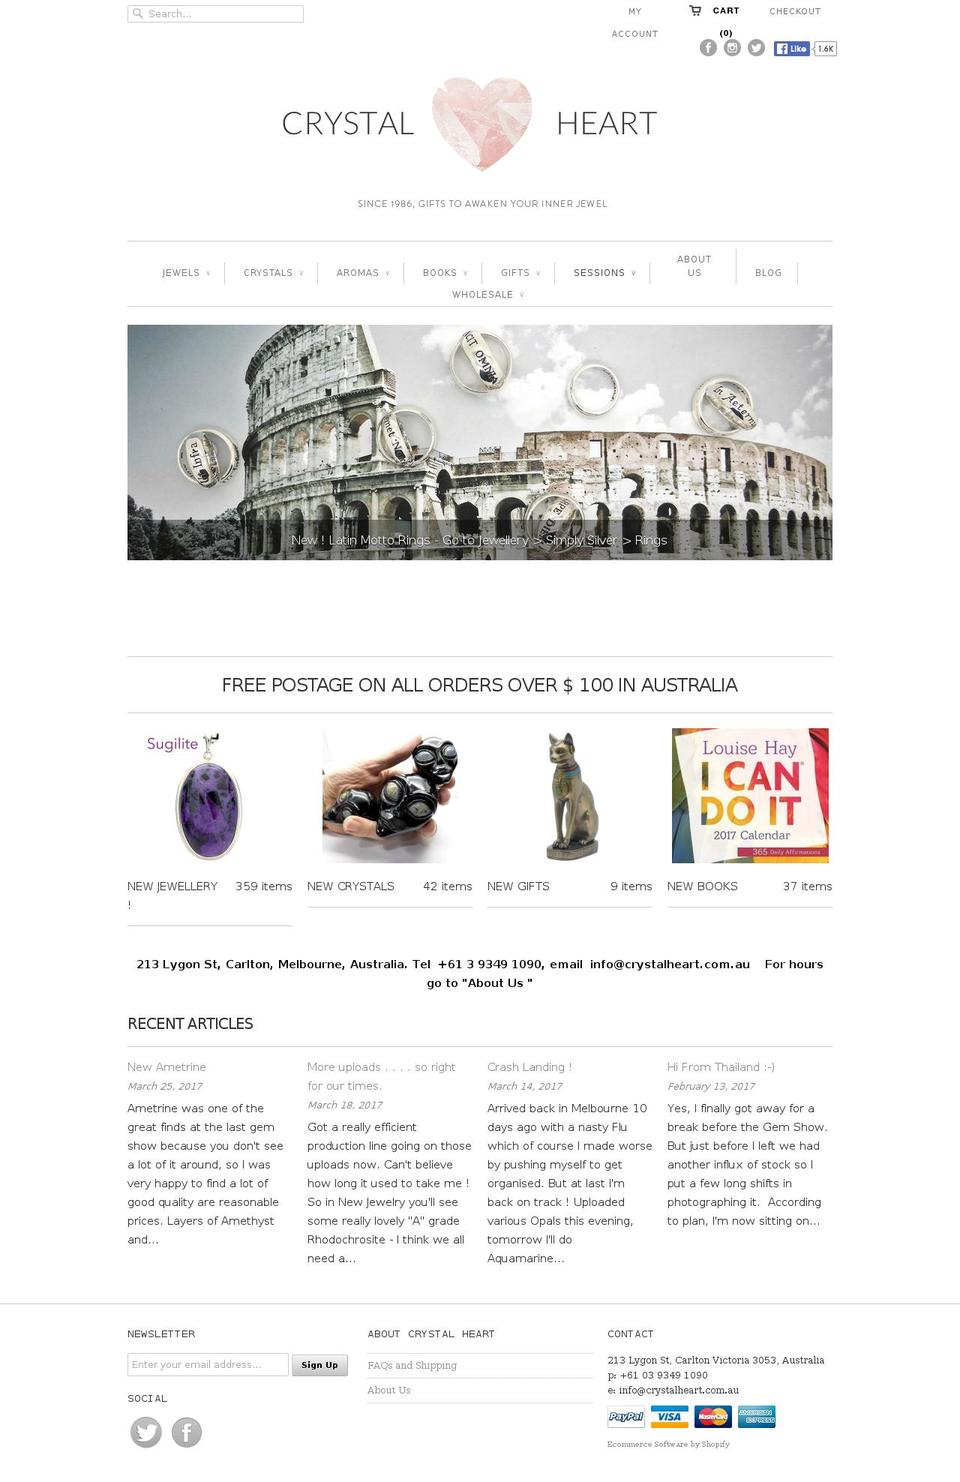 crystalheart.com.au shopify website screenshot